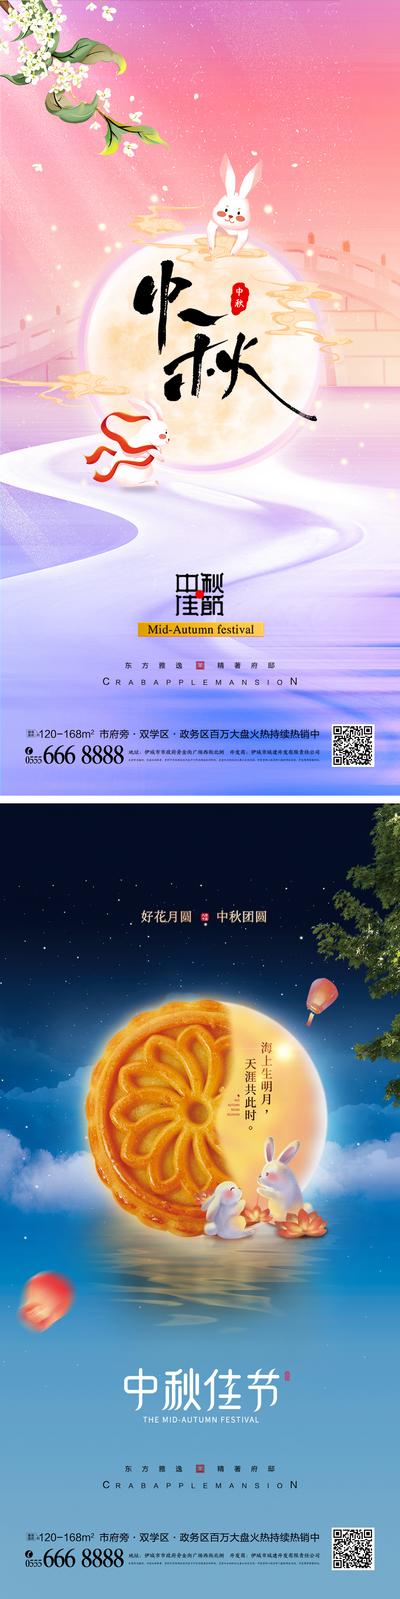 南门网 海报 中国传统节日 中秋节 创意 月饼 宣传海报 月亮